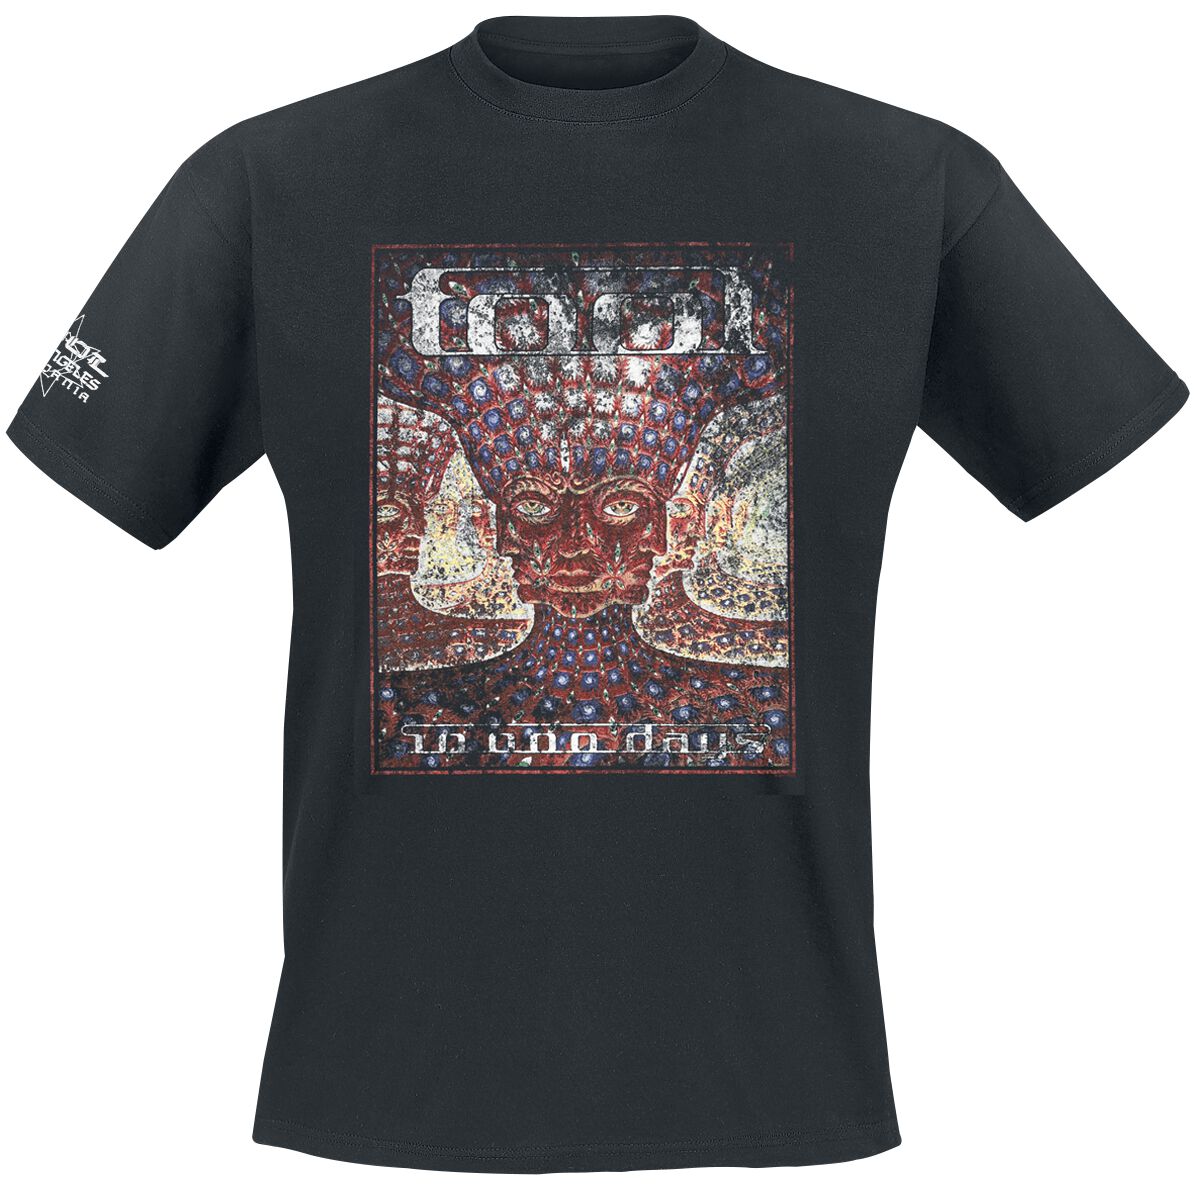 Tool T-Shirt - 10,000 days - S bis XXL - für Männer - Größe M - schwarz  - Lizenziertes Merchandise!